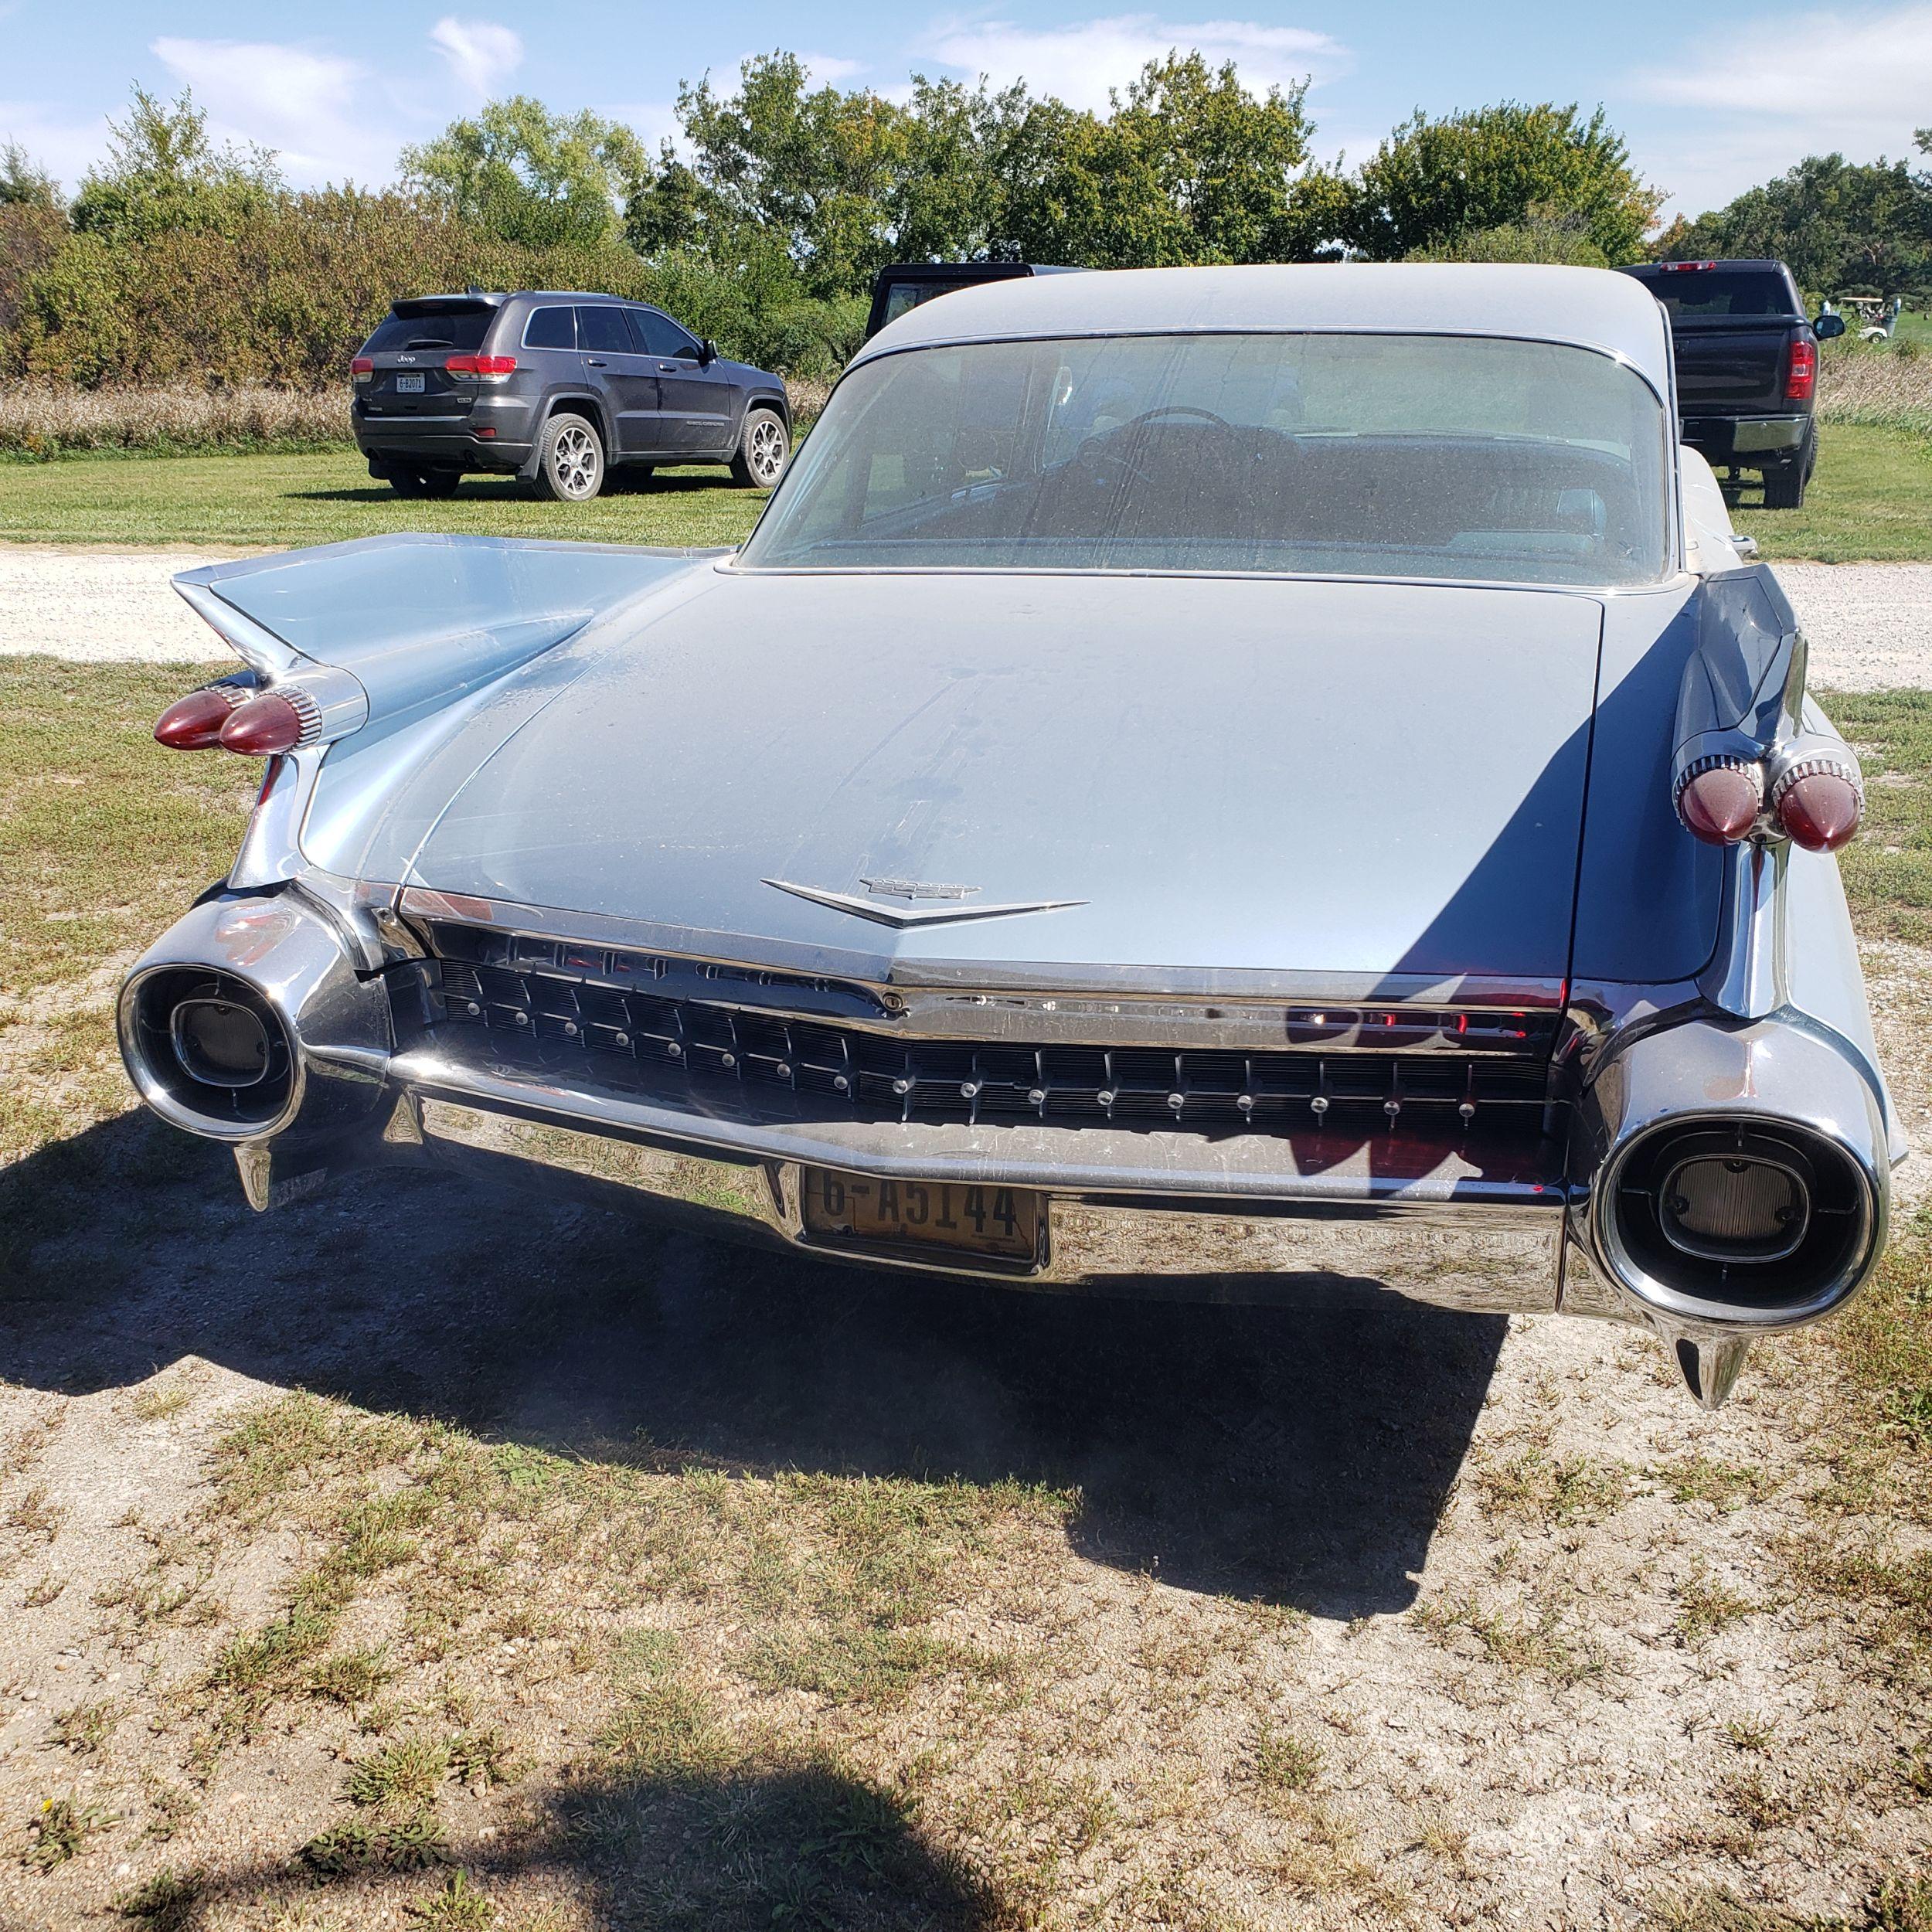 1959 Cadillac sedan